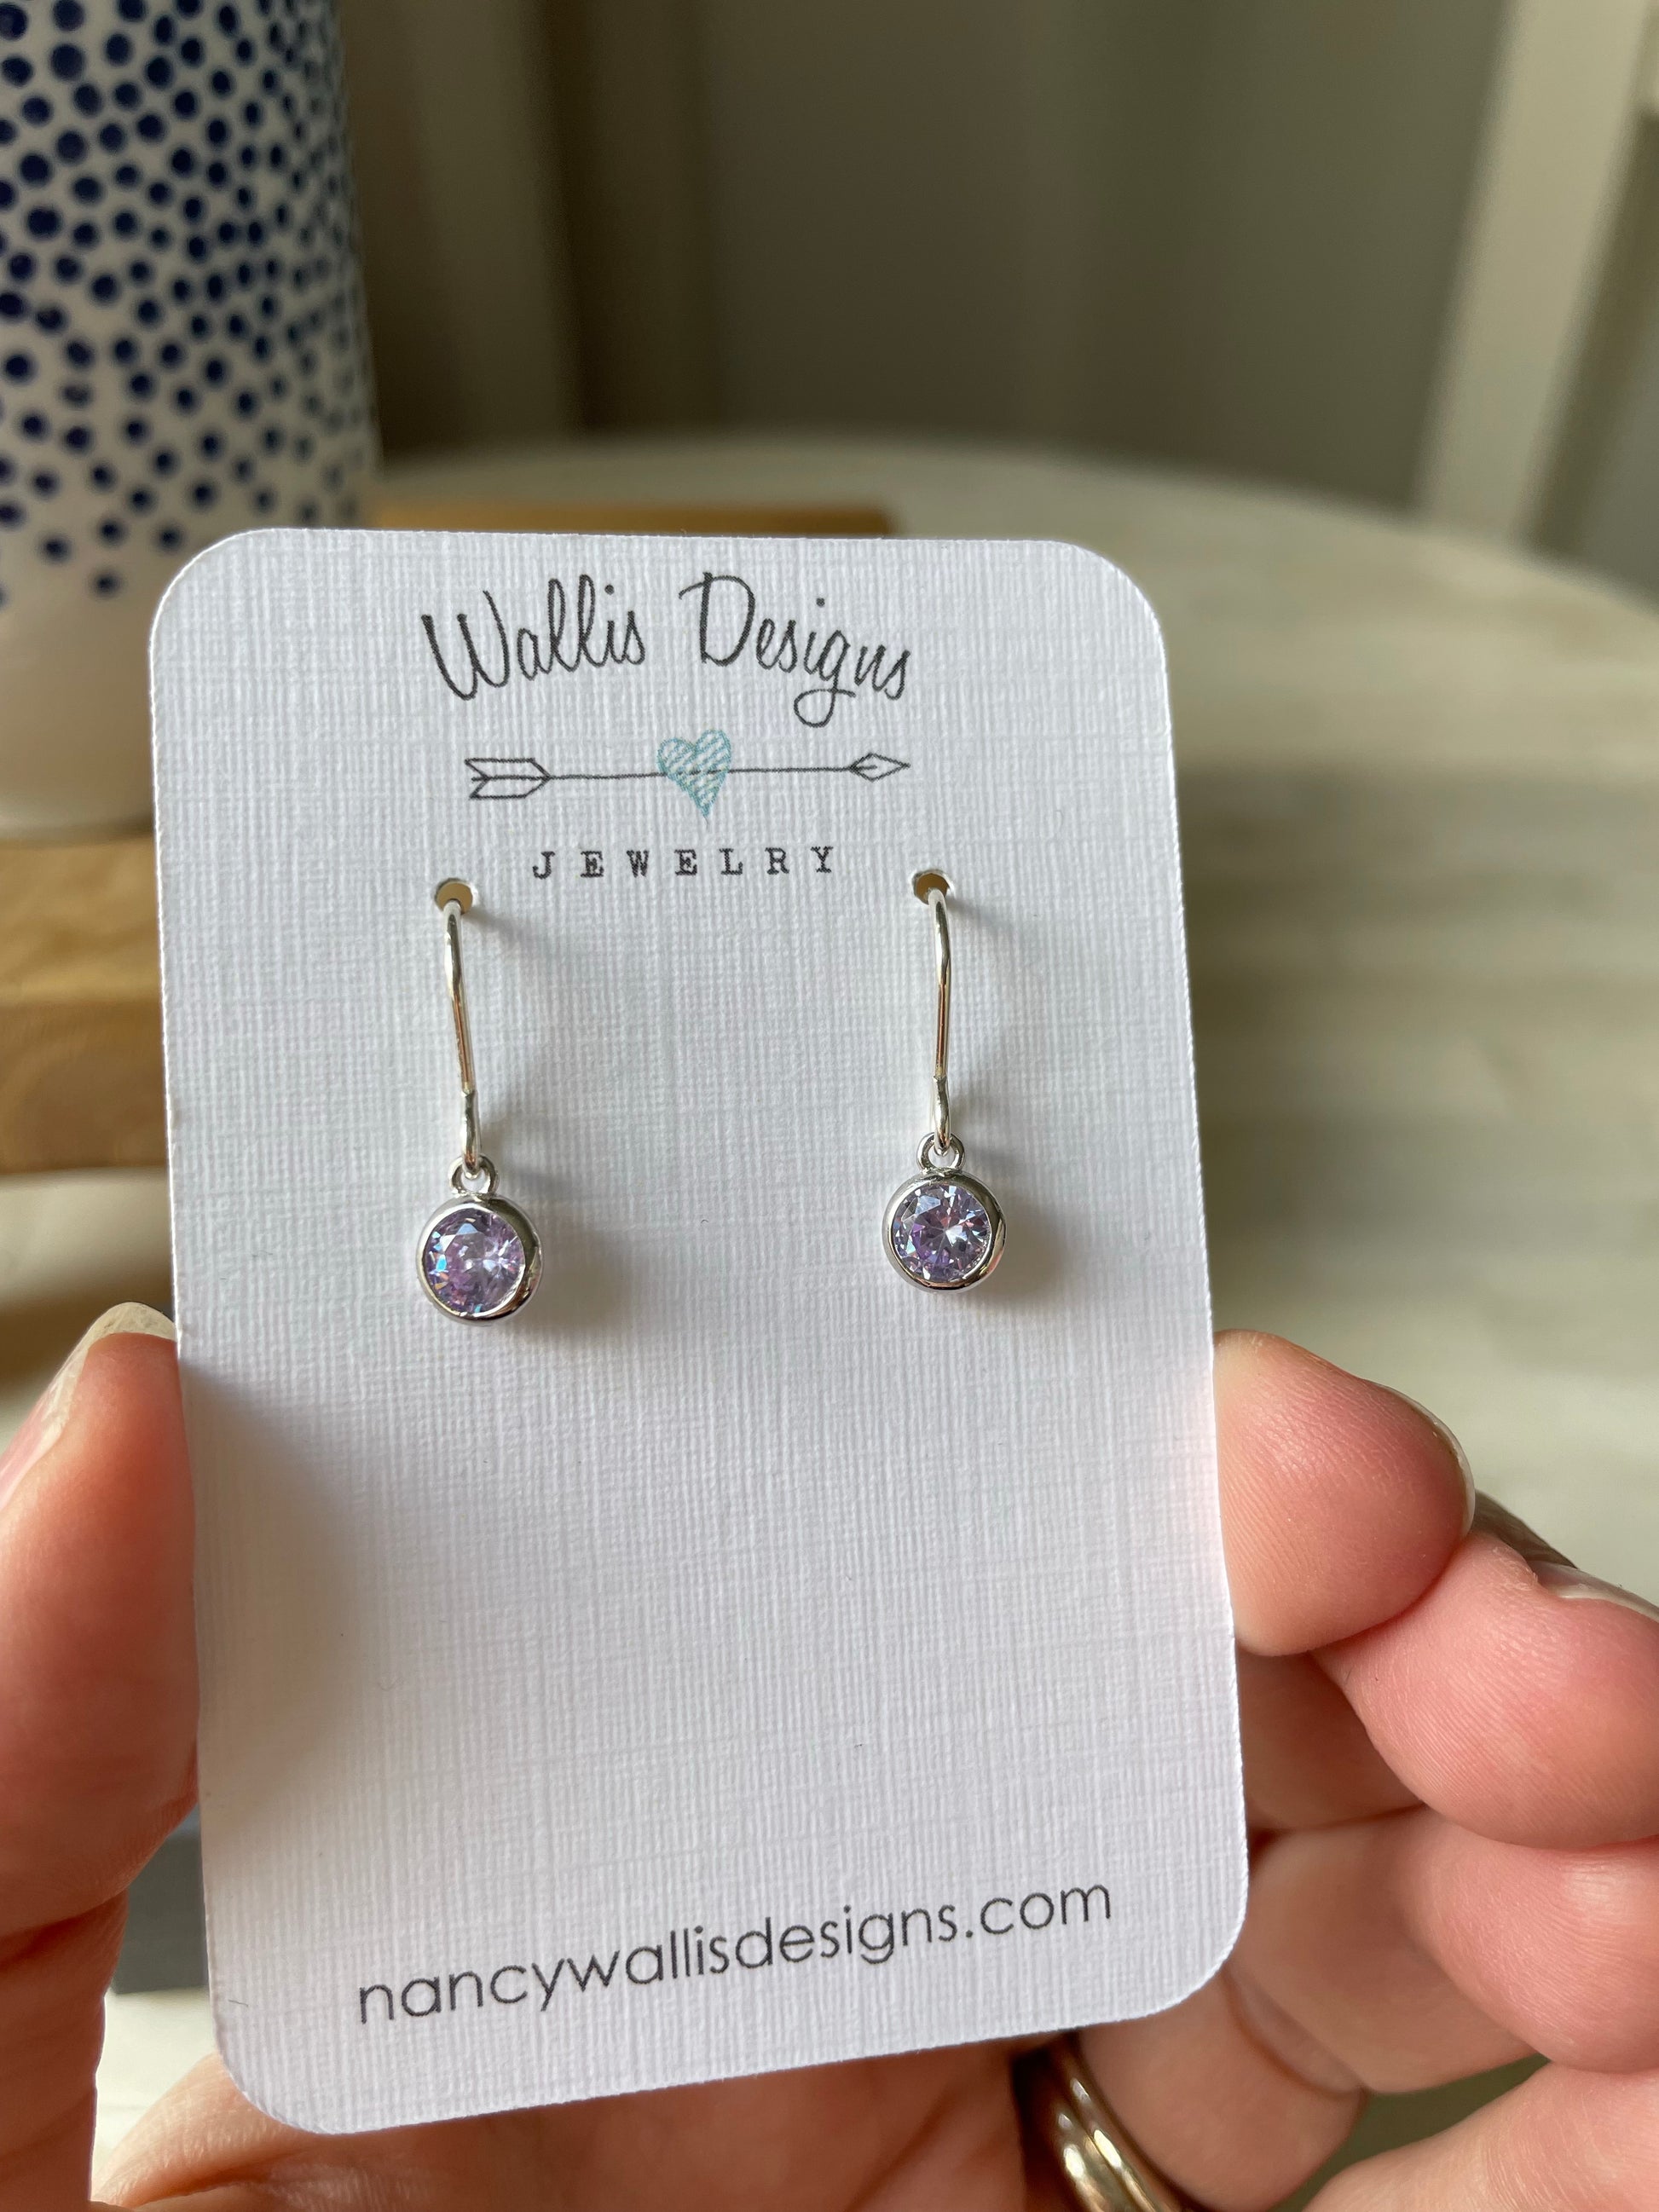 Birthstone earrings by Wallis Designs.